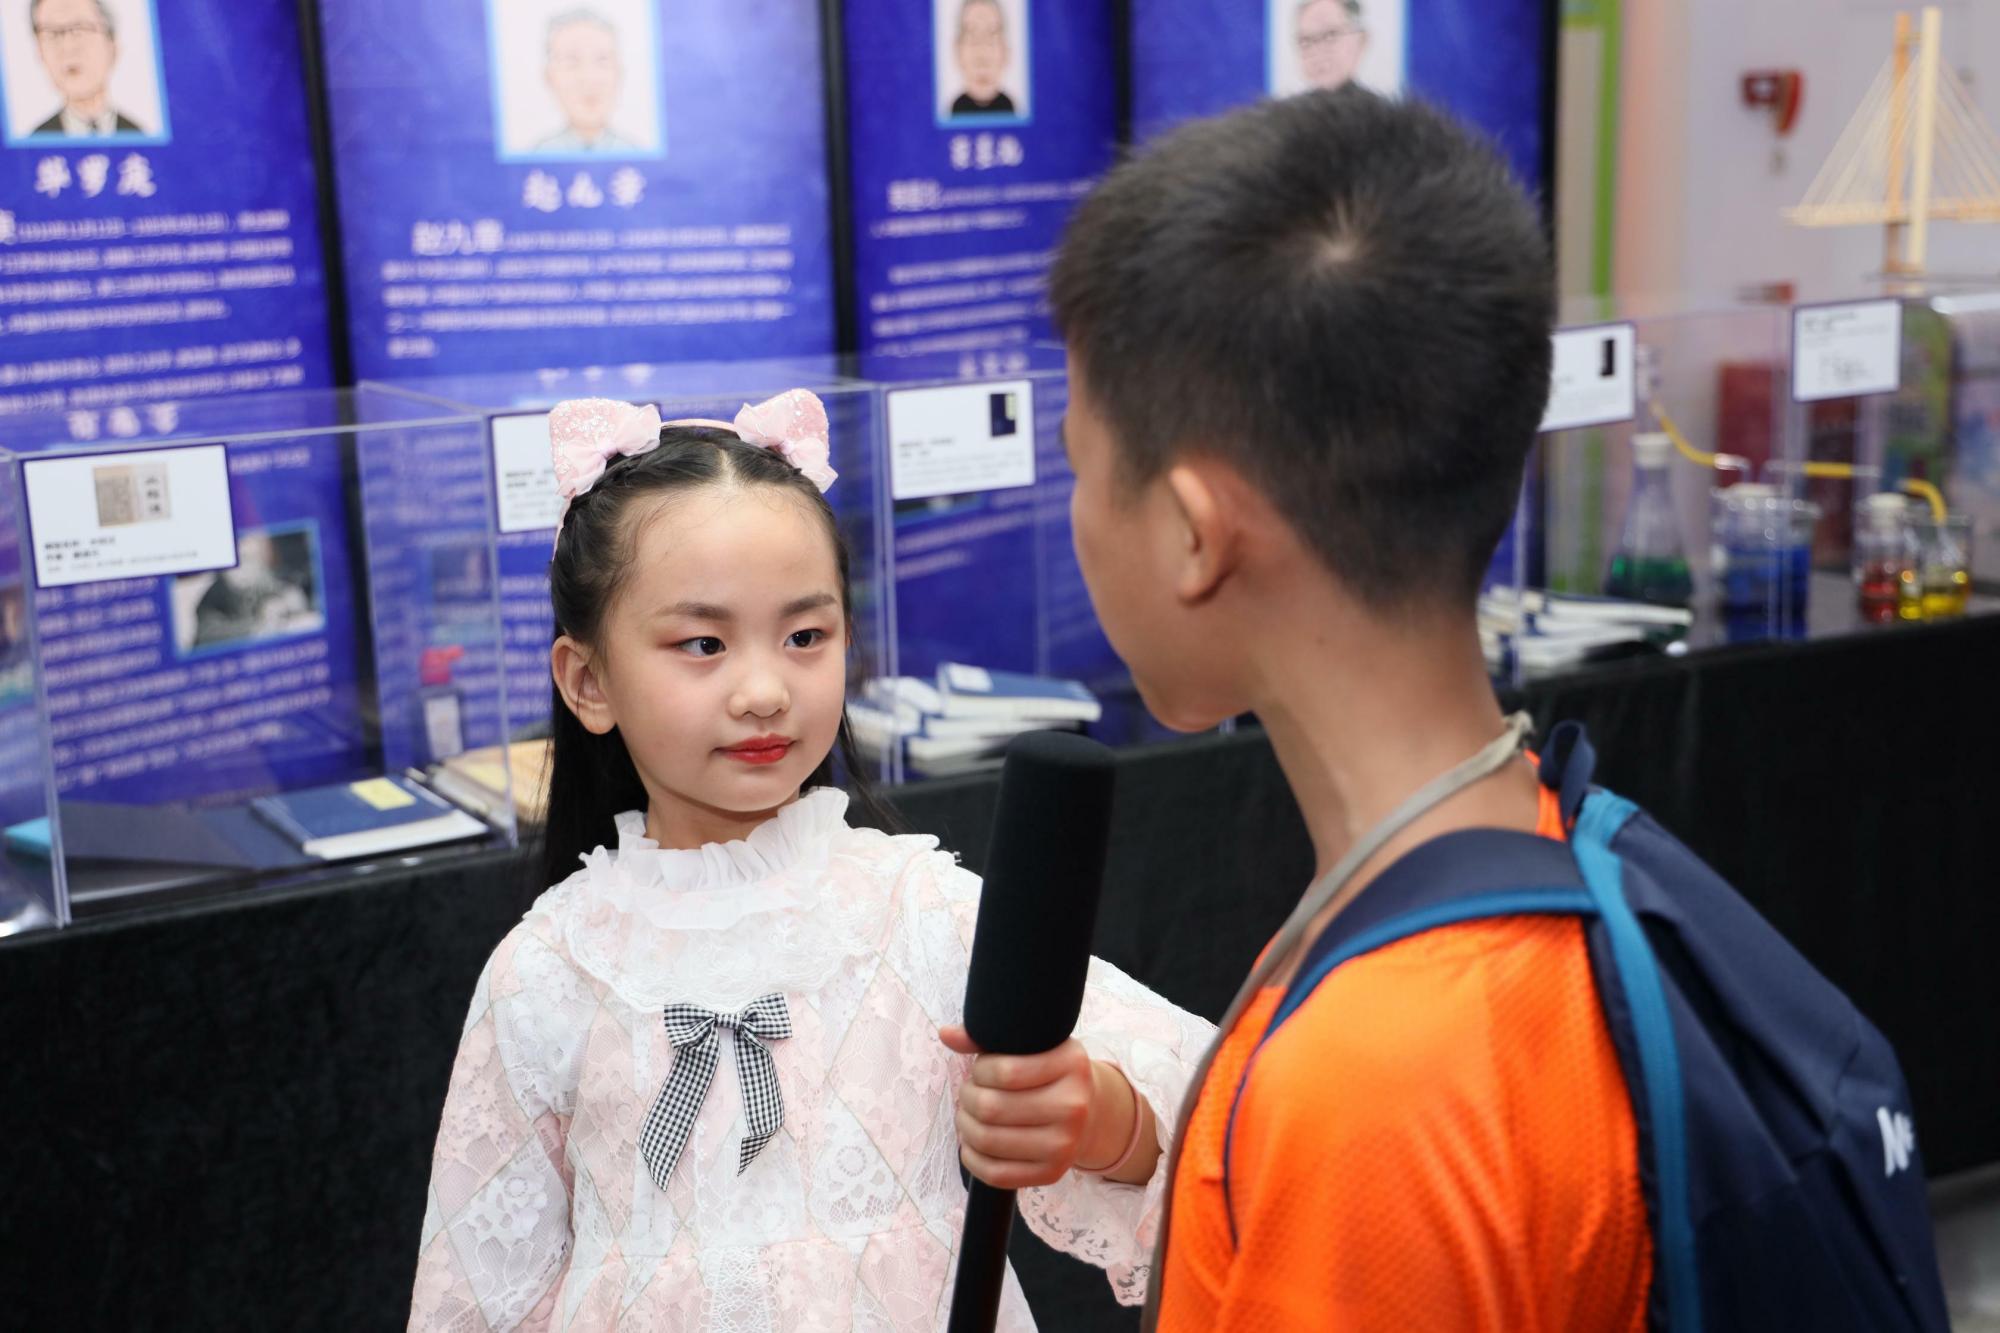 中国科技简史展览在深圳举办 鼓励青少年探索星辰大海